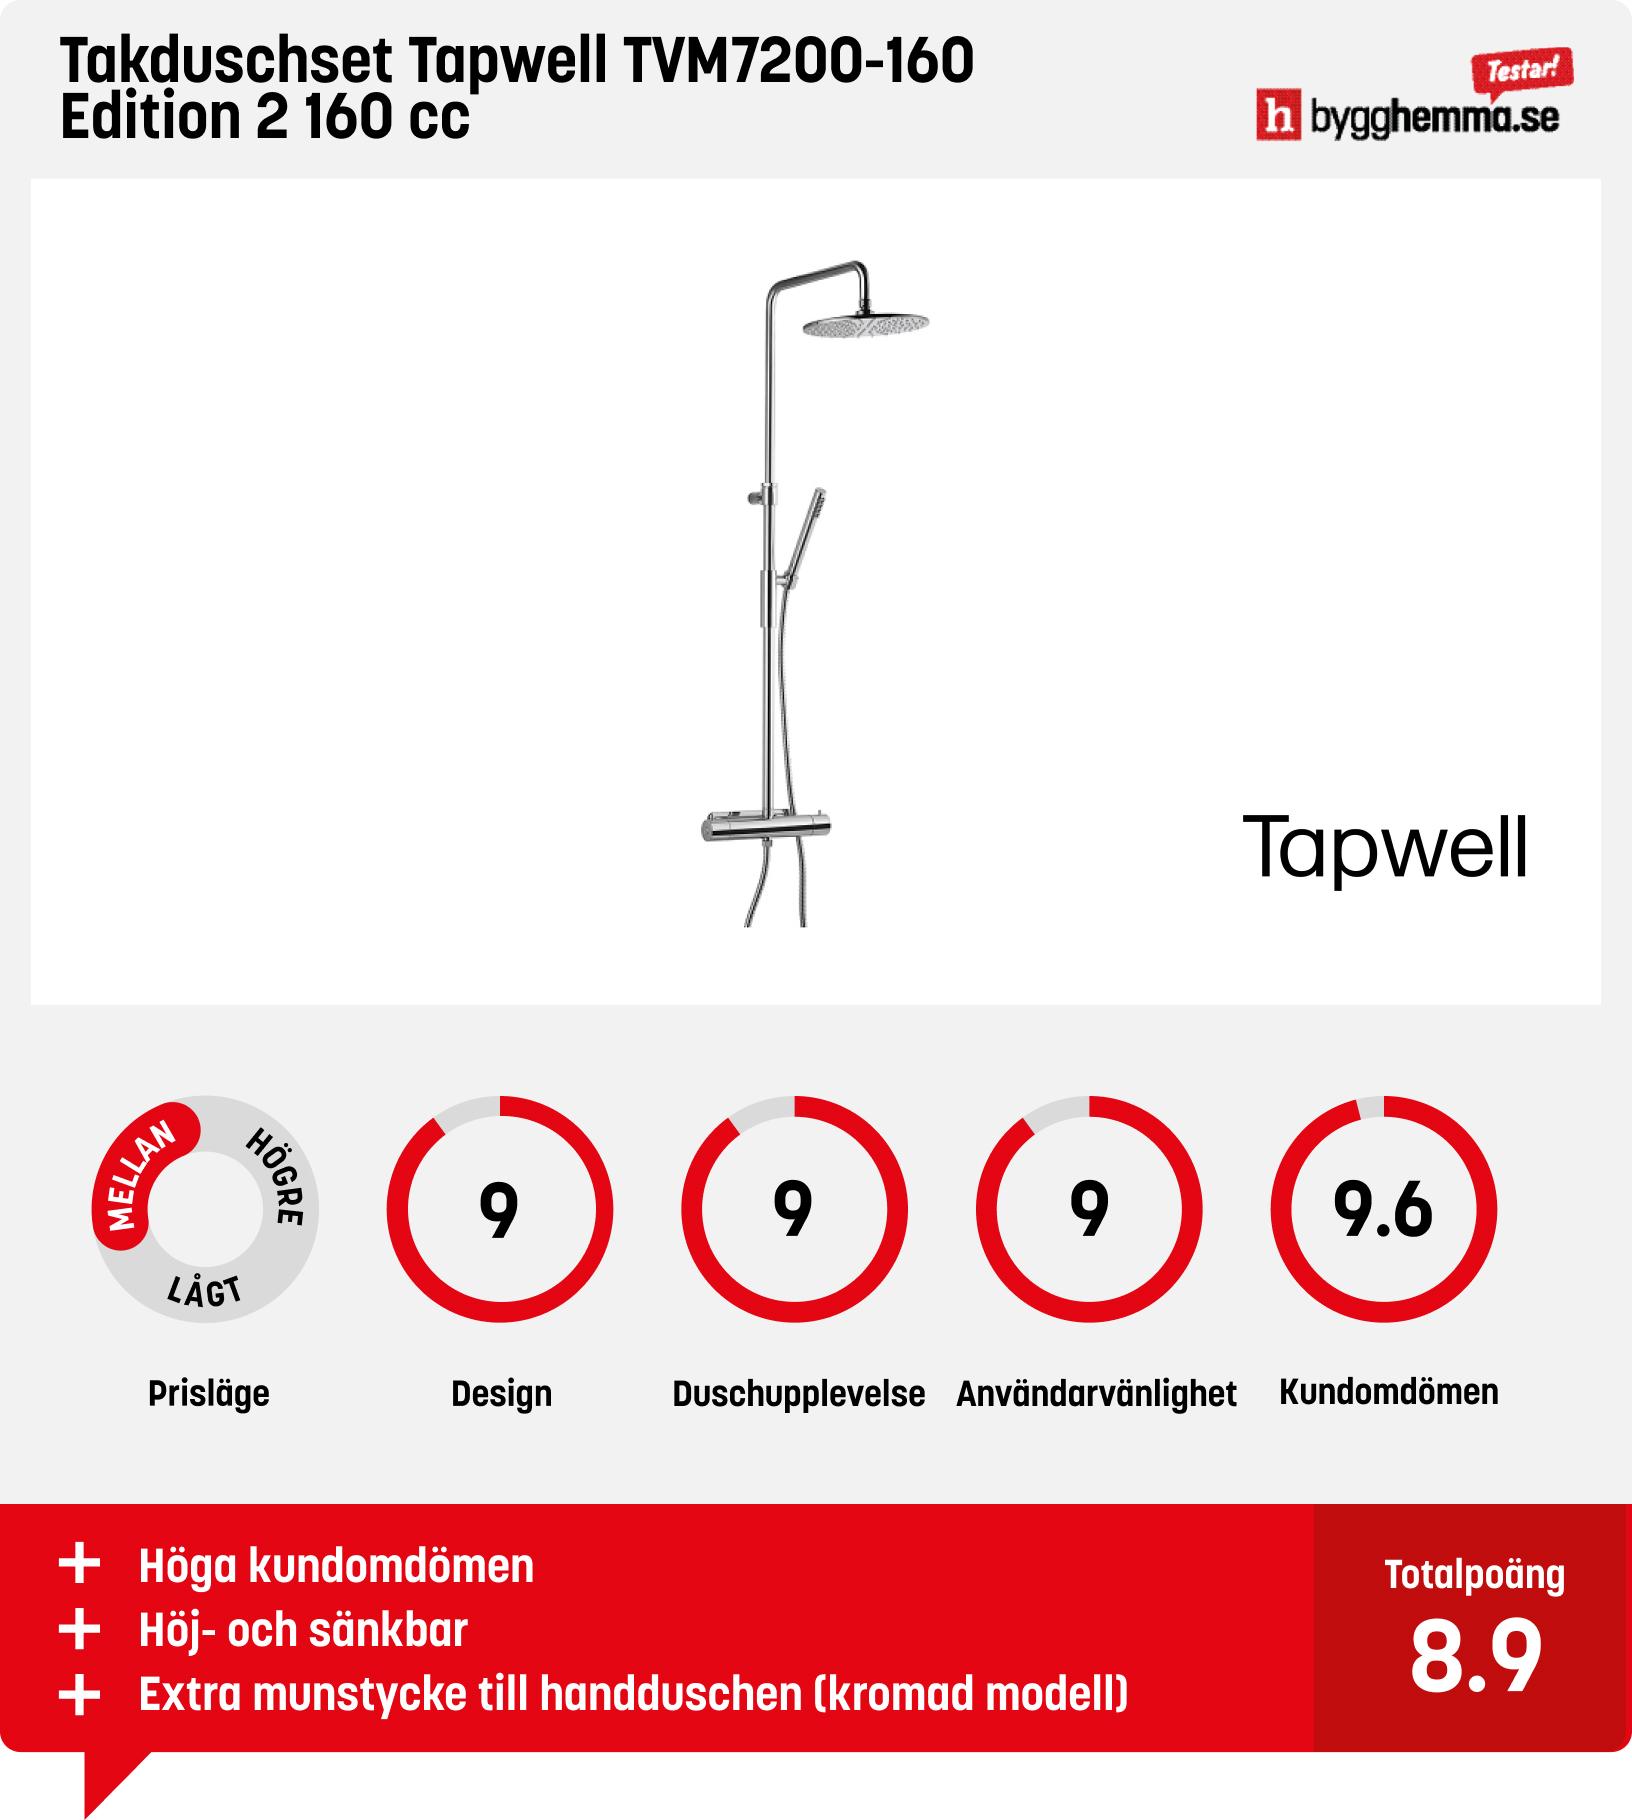 Takdusch bäst i test - Takduschset Tapwell TVM7200-160 Edition 2 160 cc